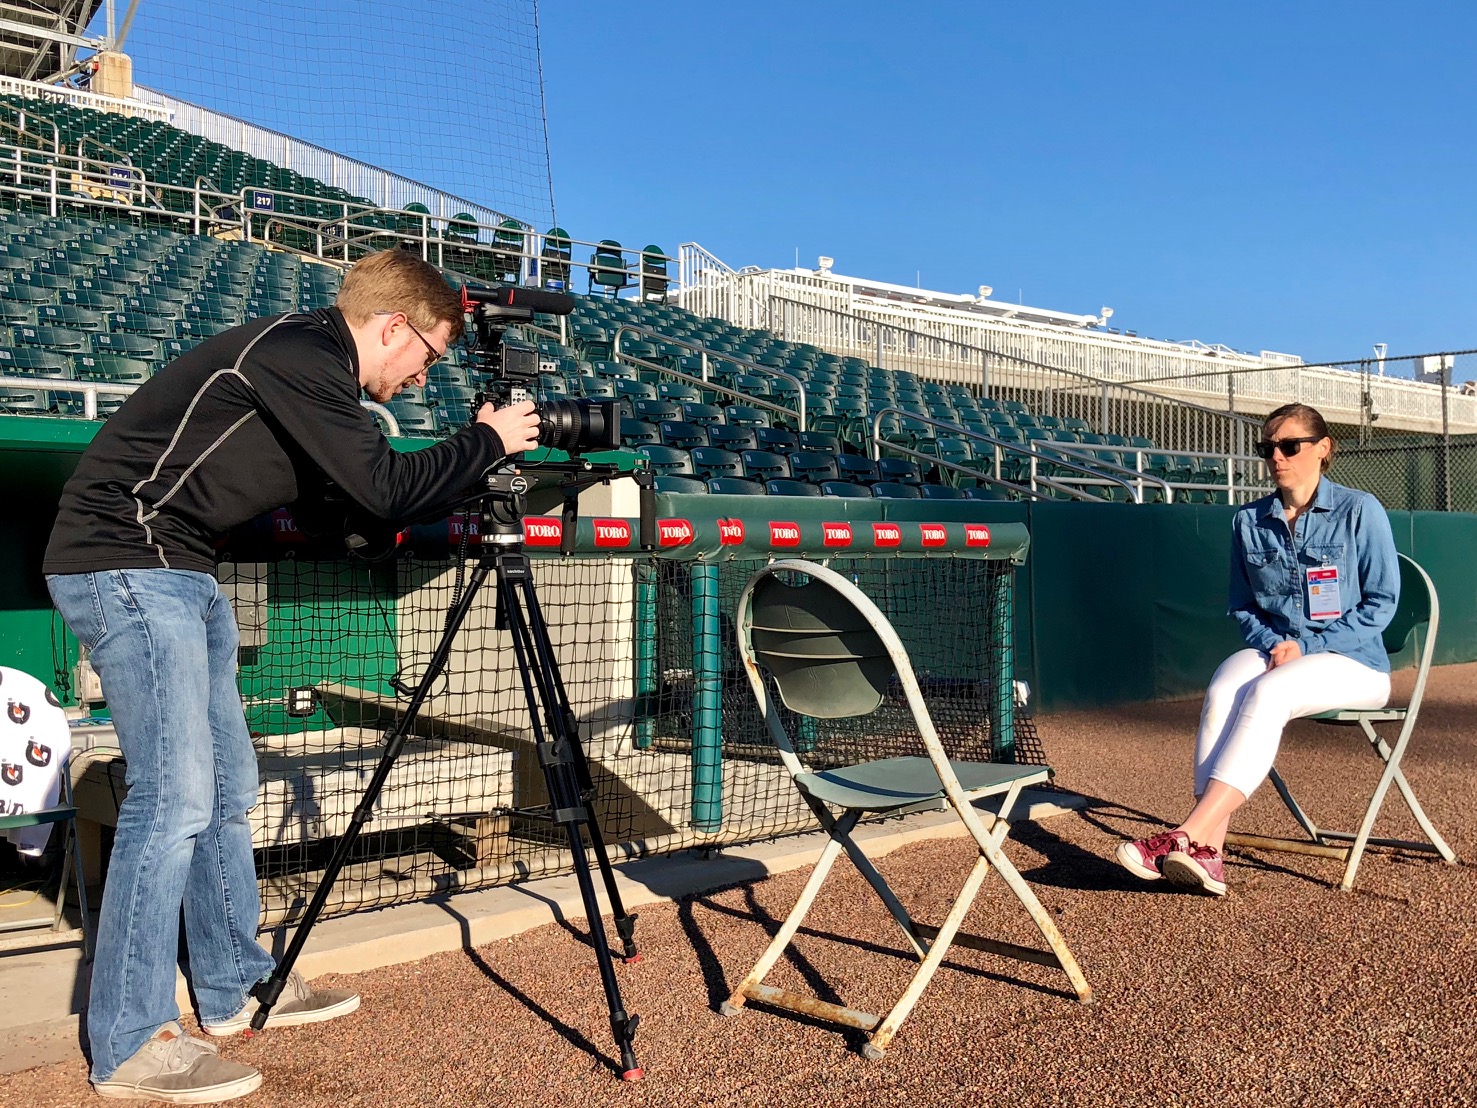 La Vida Baseball at Spring Training Shooting Video at Scale